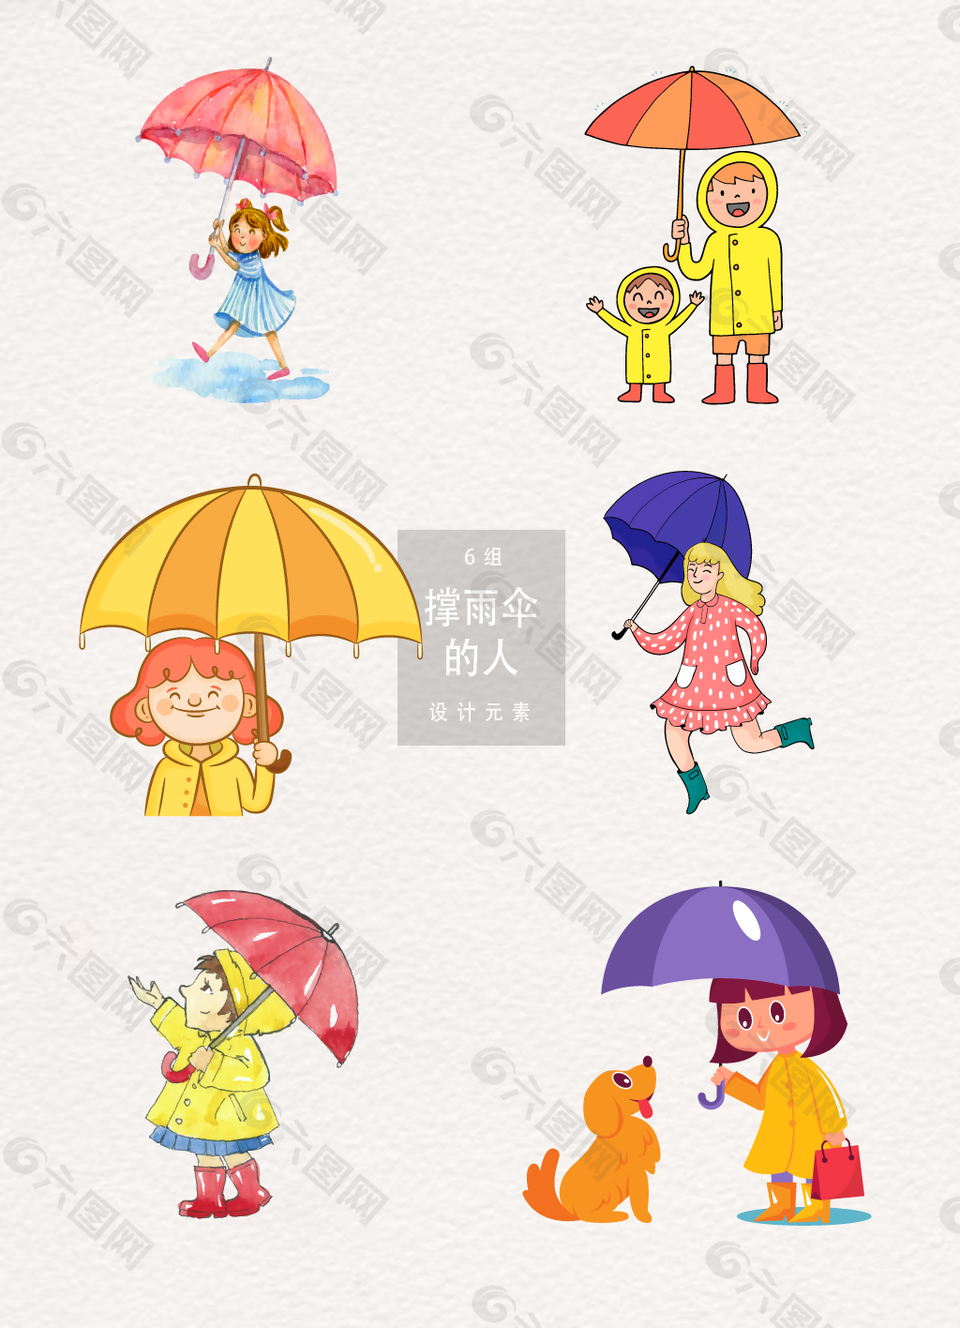 撑雨伞的人插画AI素材